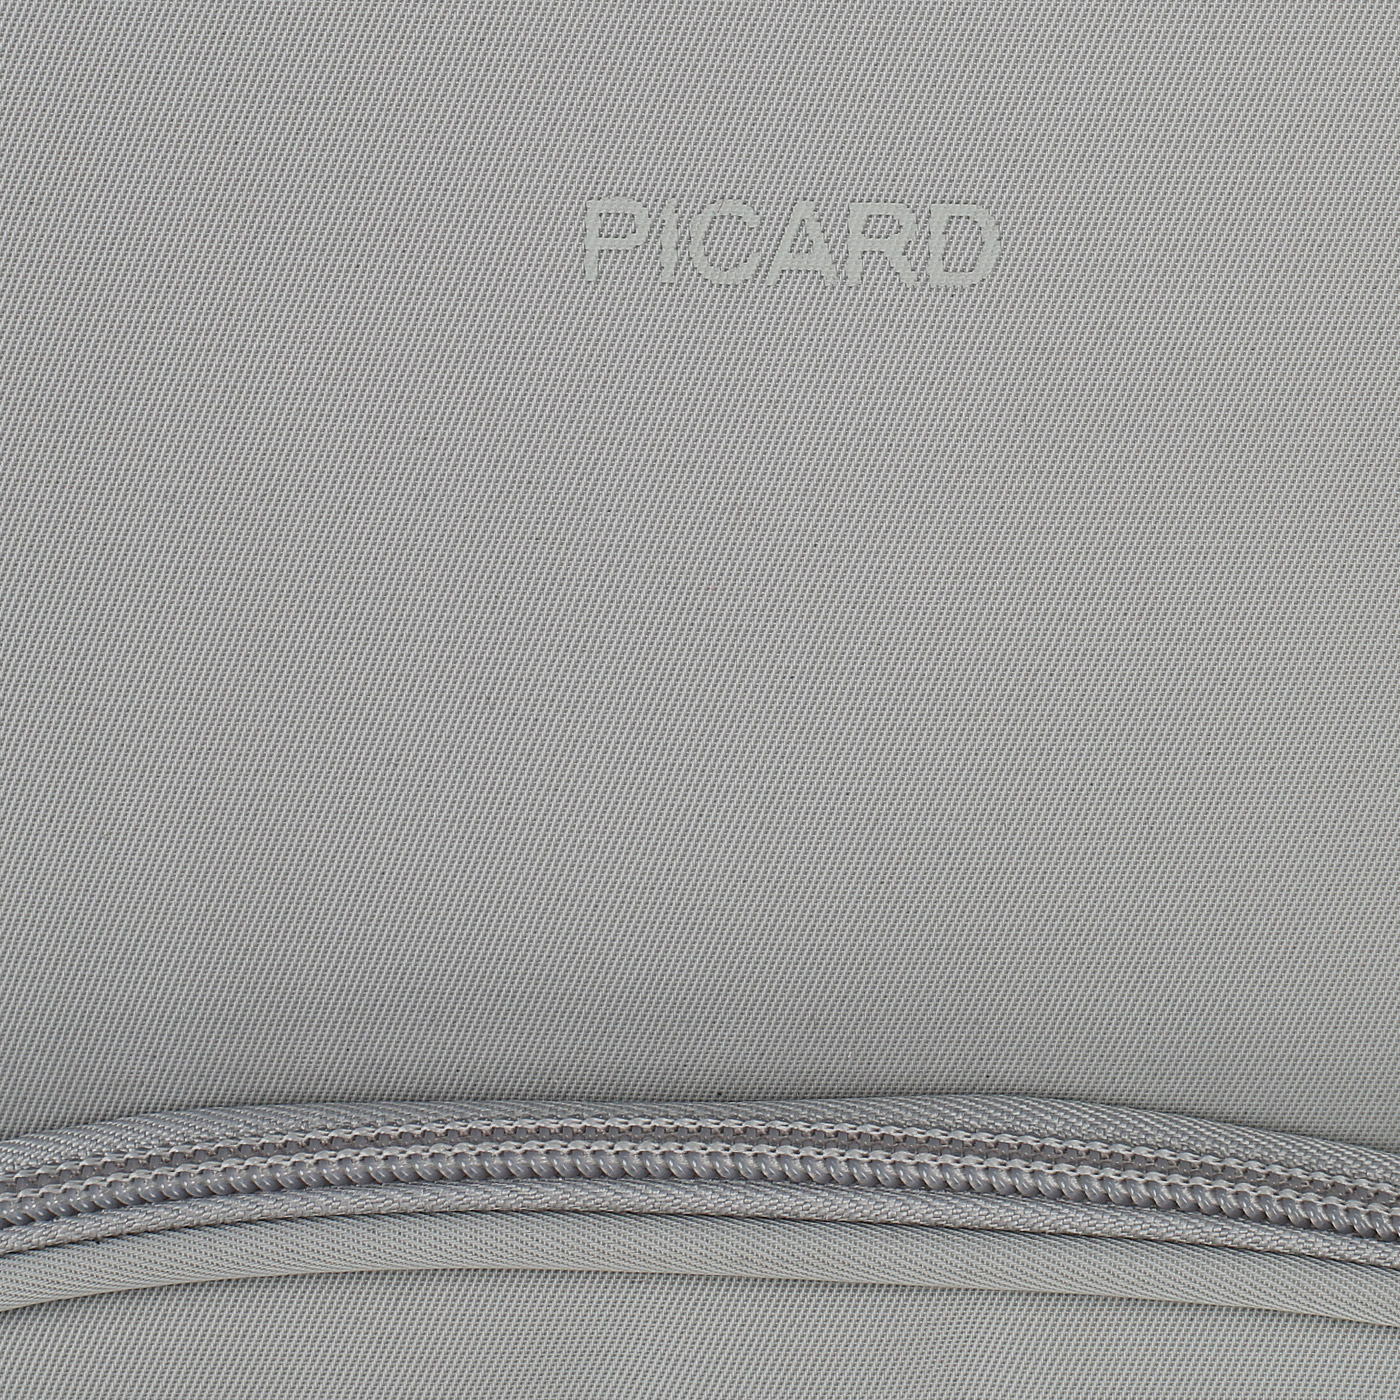 Текстильный рюкзак Picard Tiptop